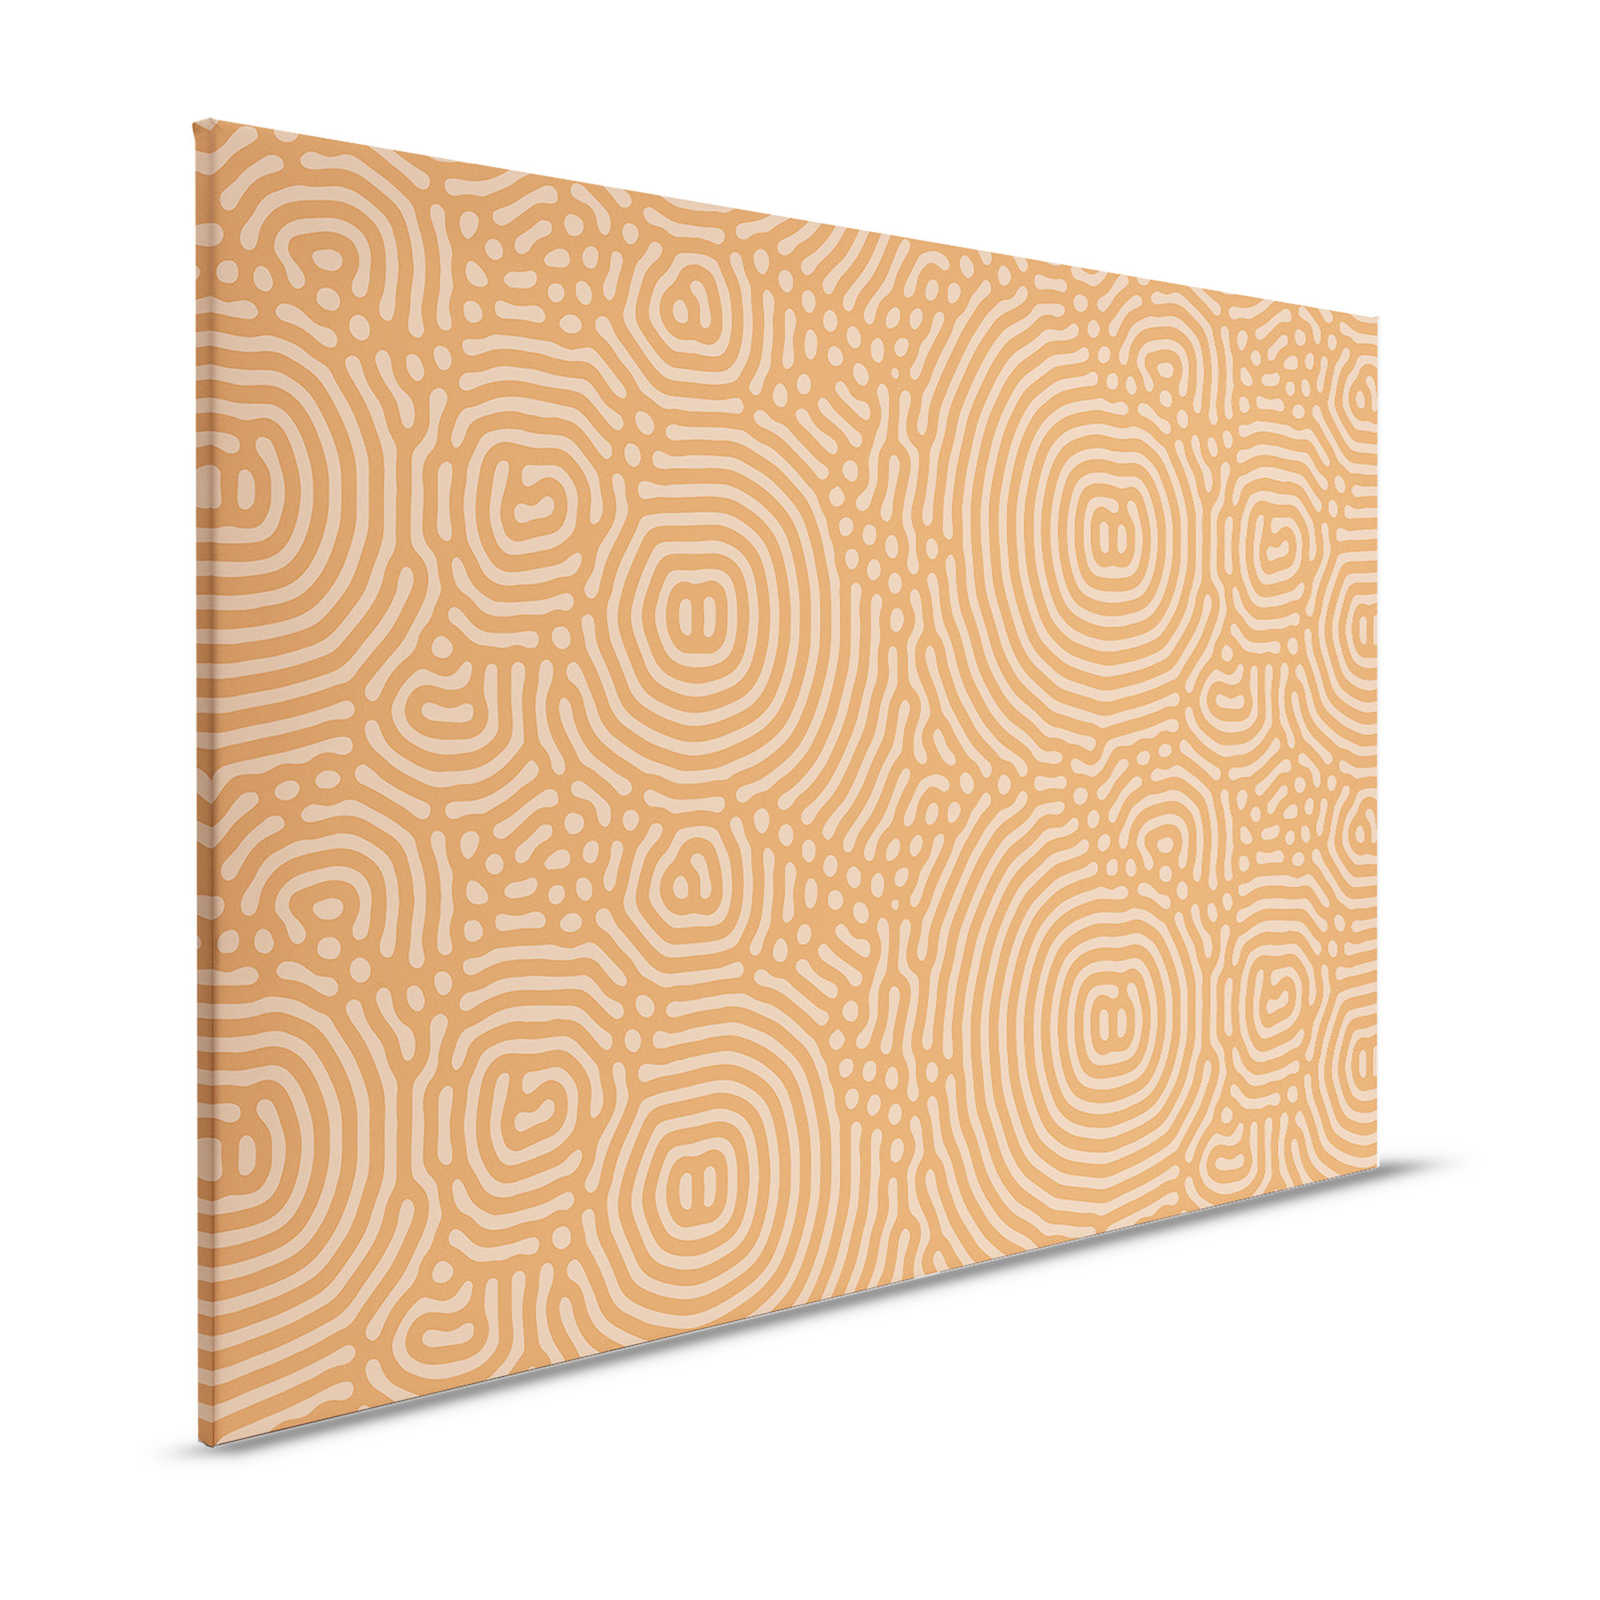 Sahel 2 - Pittura su tela arancione con motivo a labirinto in terracotta - 1,20 m x 0,80 m
